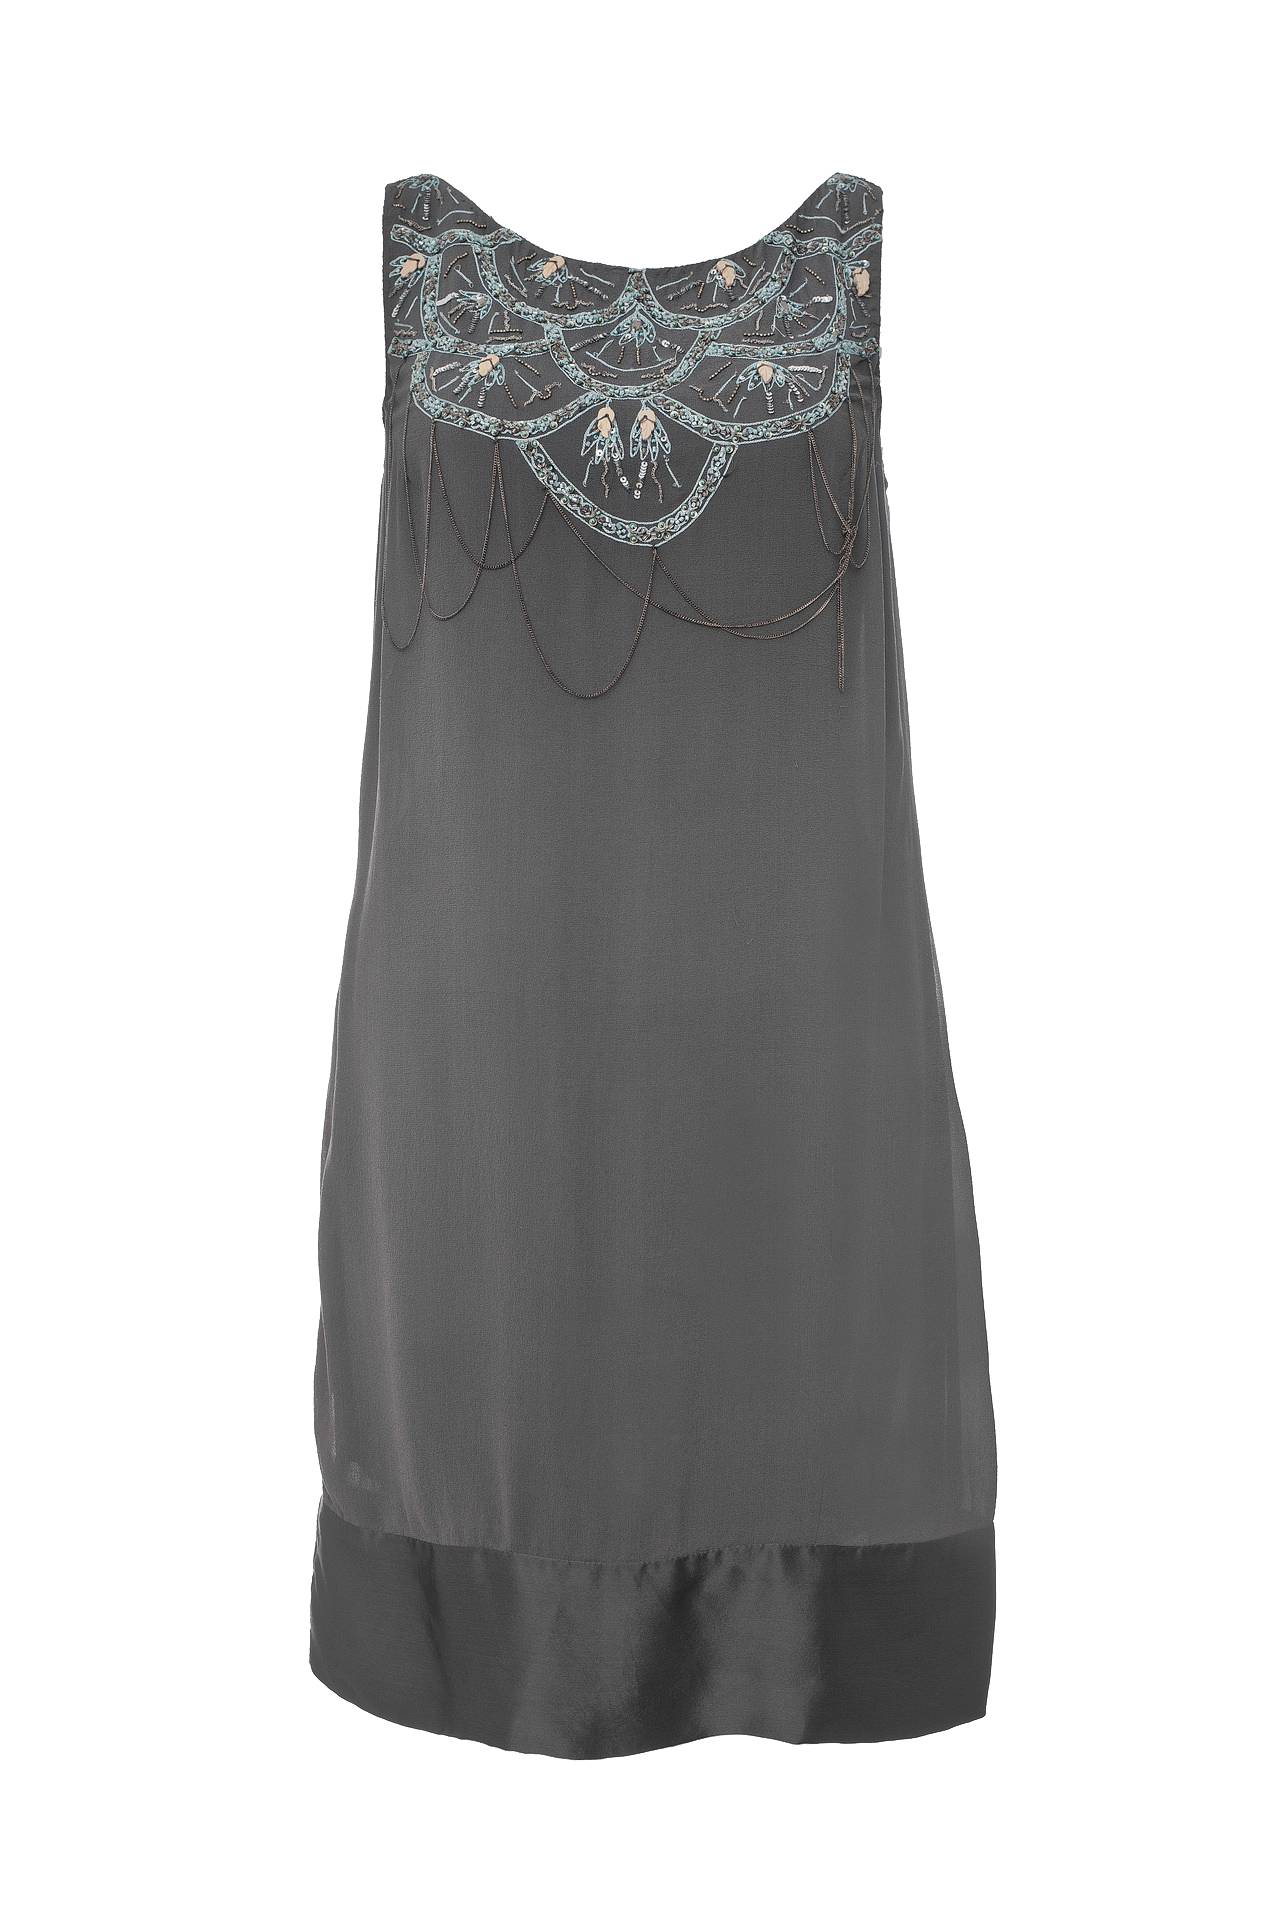 Одежда женская Платье NOUGAT LONDON (NG8422/10.1). Купить за 11960 руб.